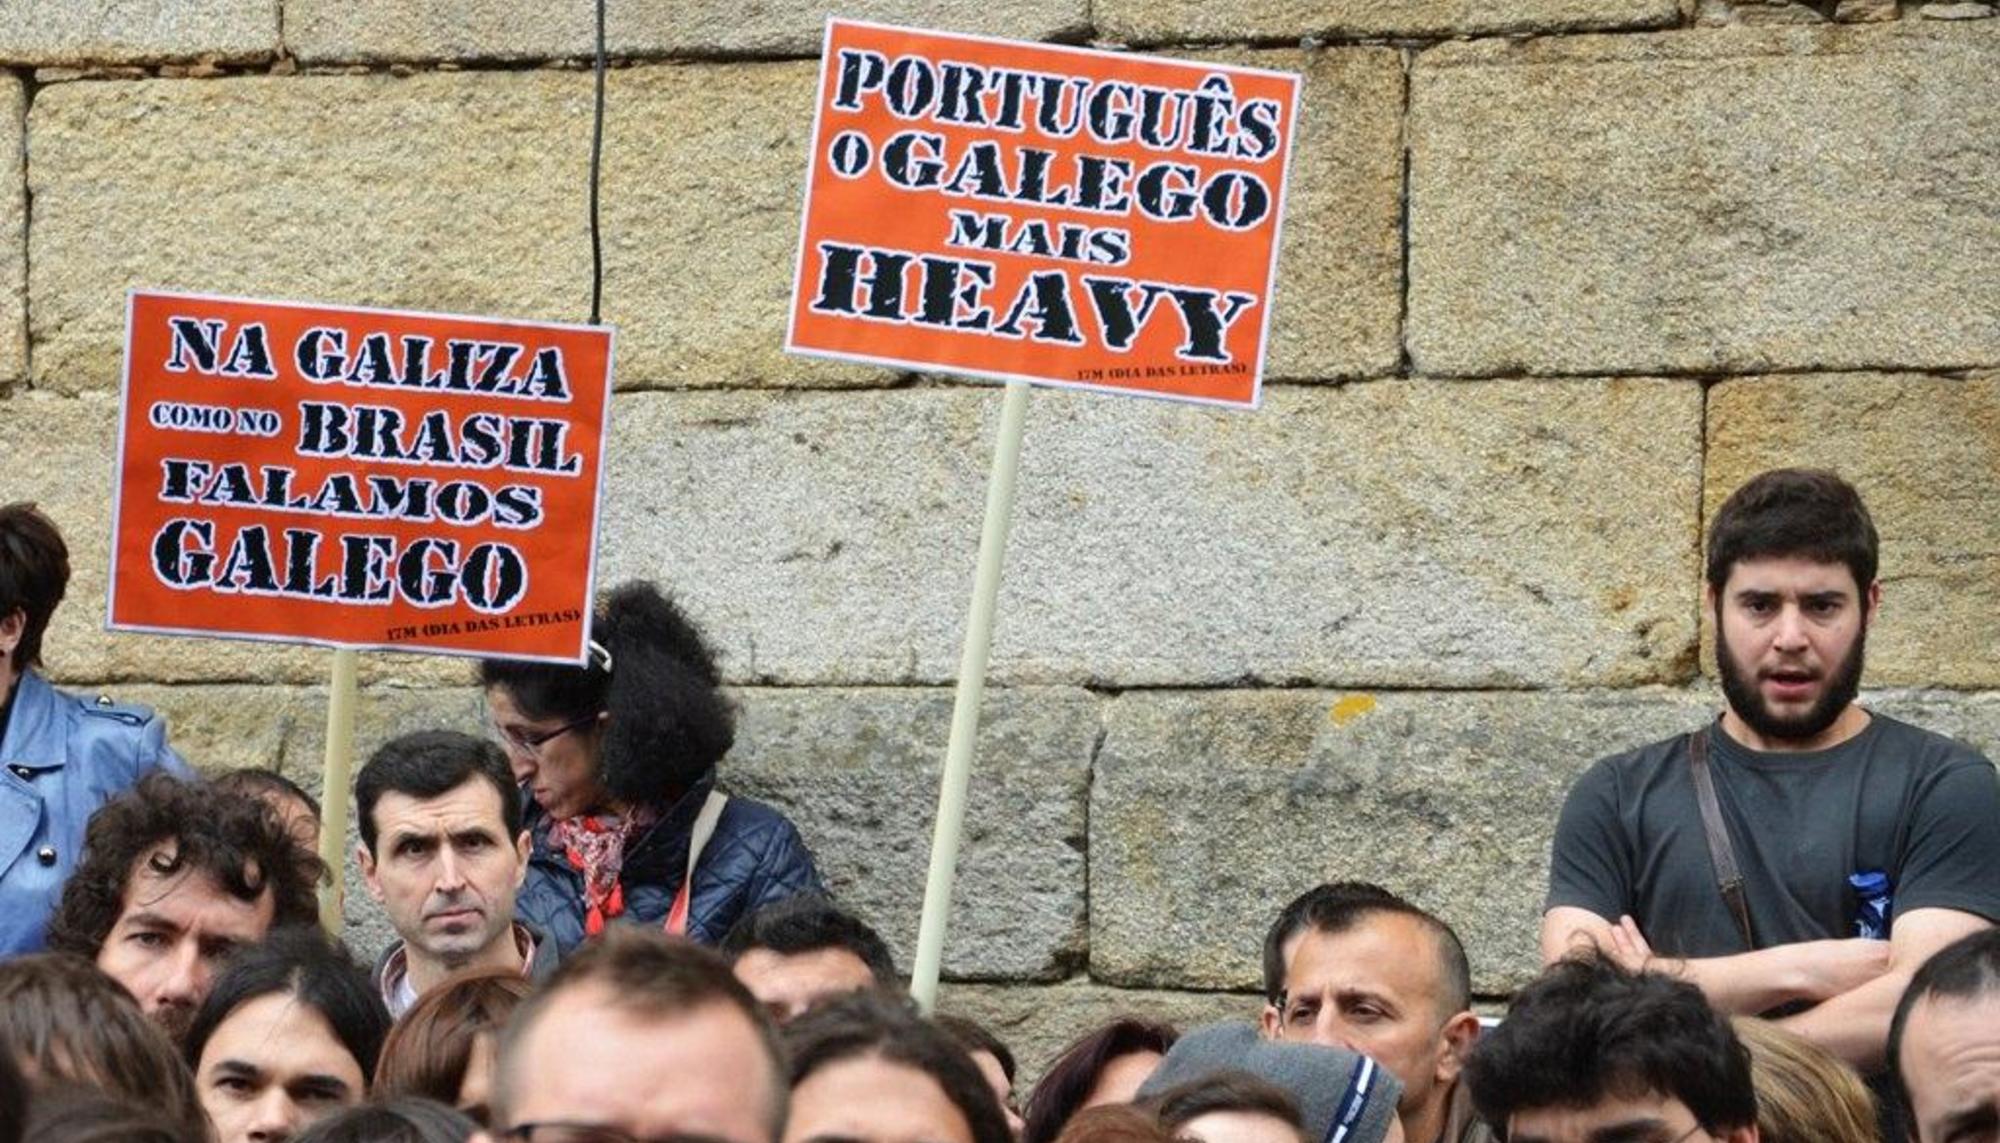 portugues galego